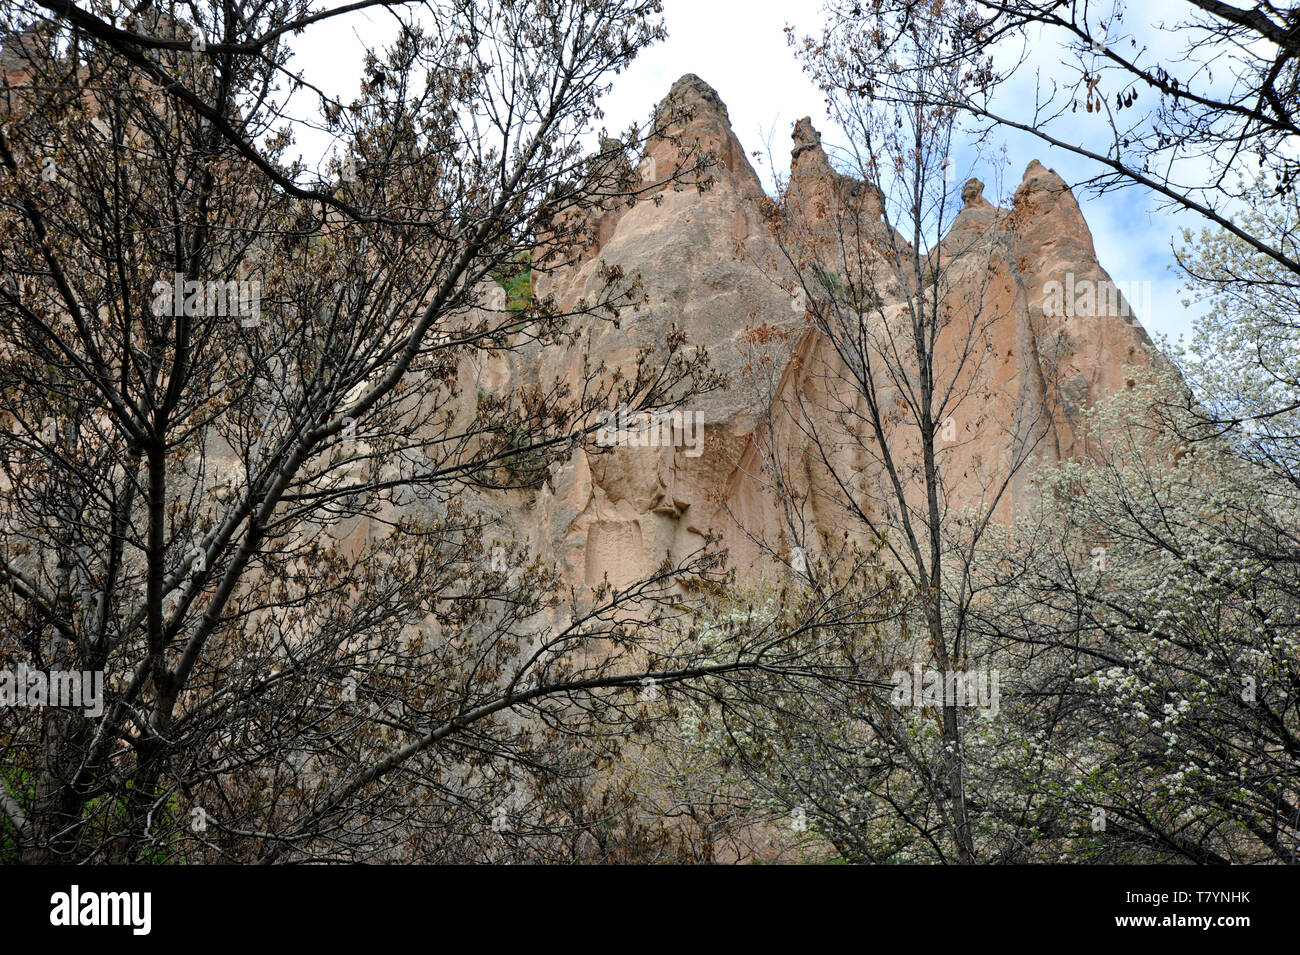 Unusual rock formations in Cappadocia, Turkey Stock Photo